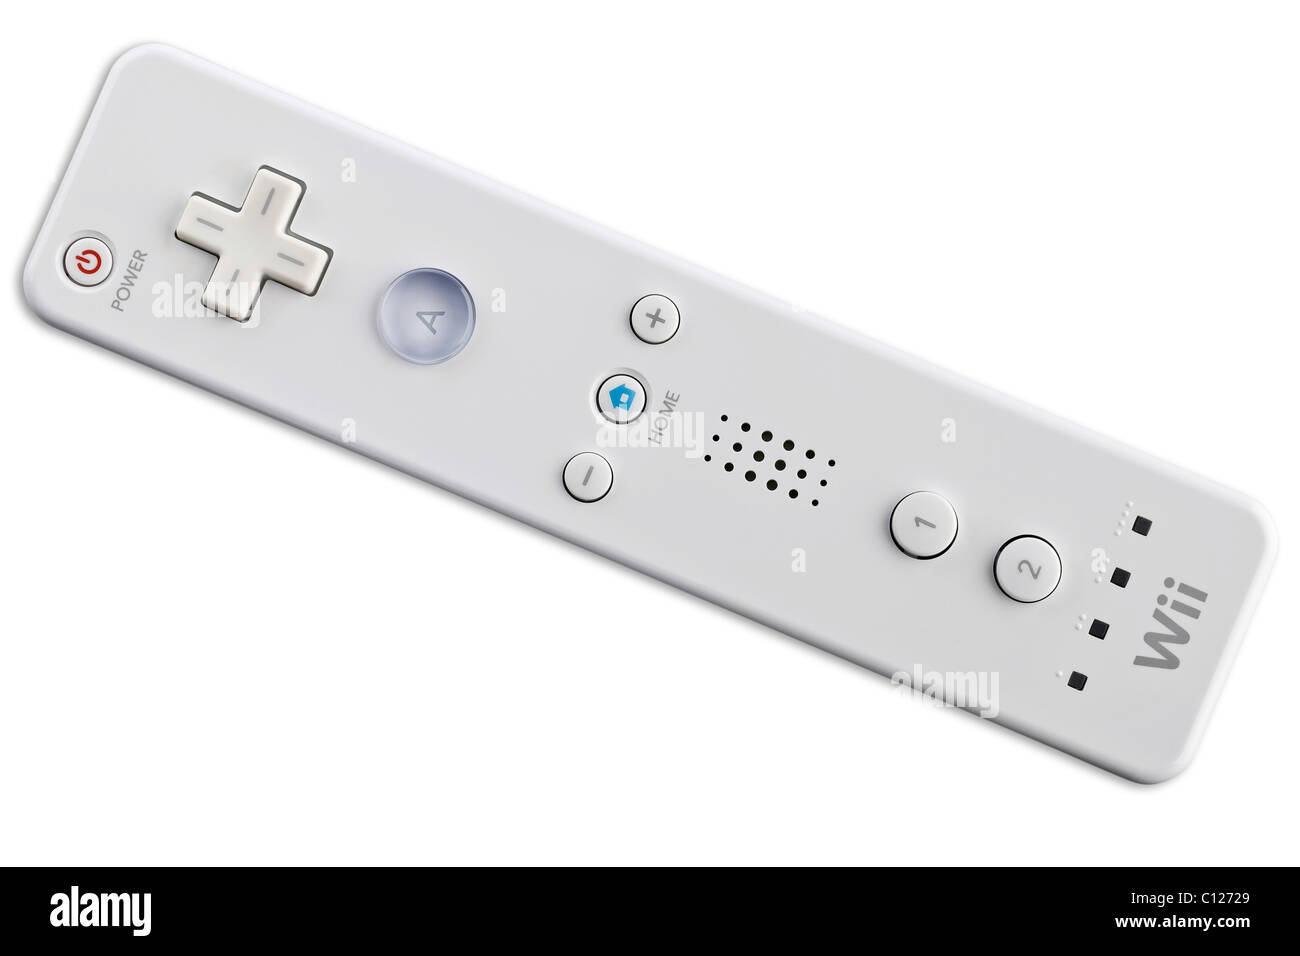 Control remoto de Wii, Wiimote, controlador de la consola Wii de Nintendo Foto de stock